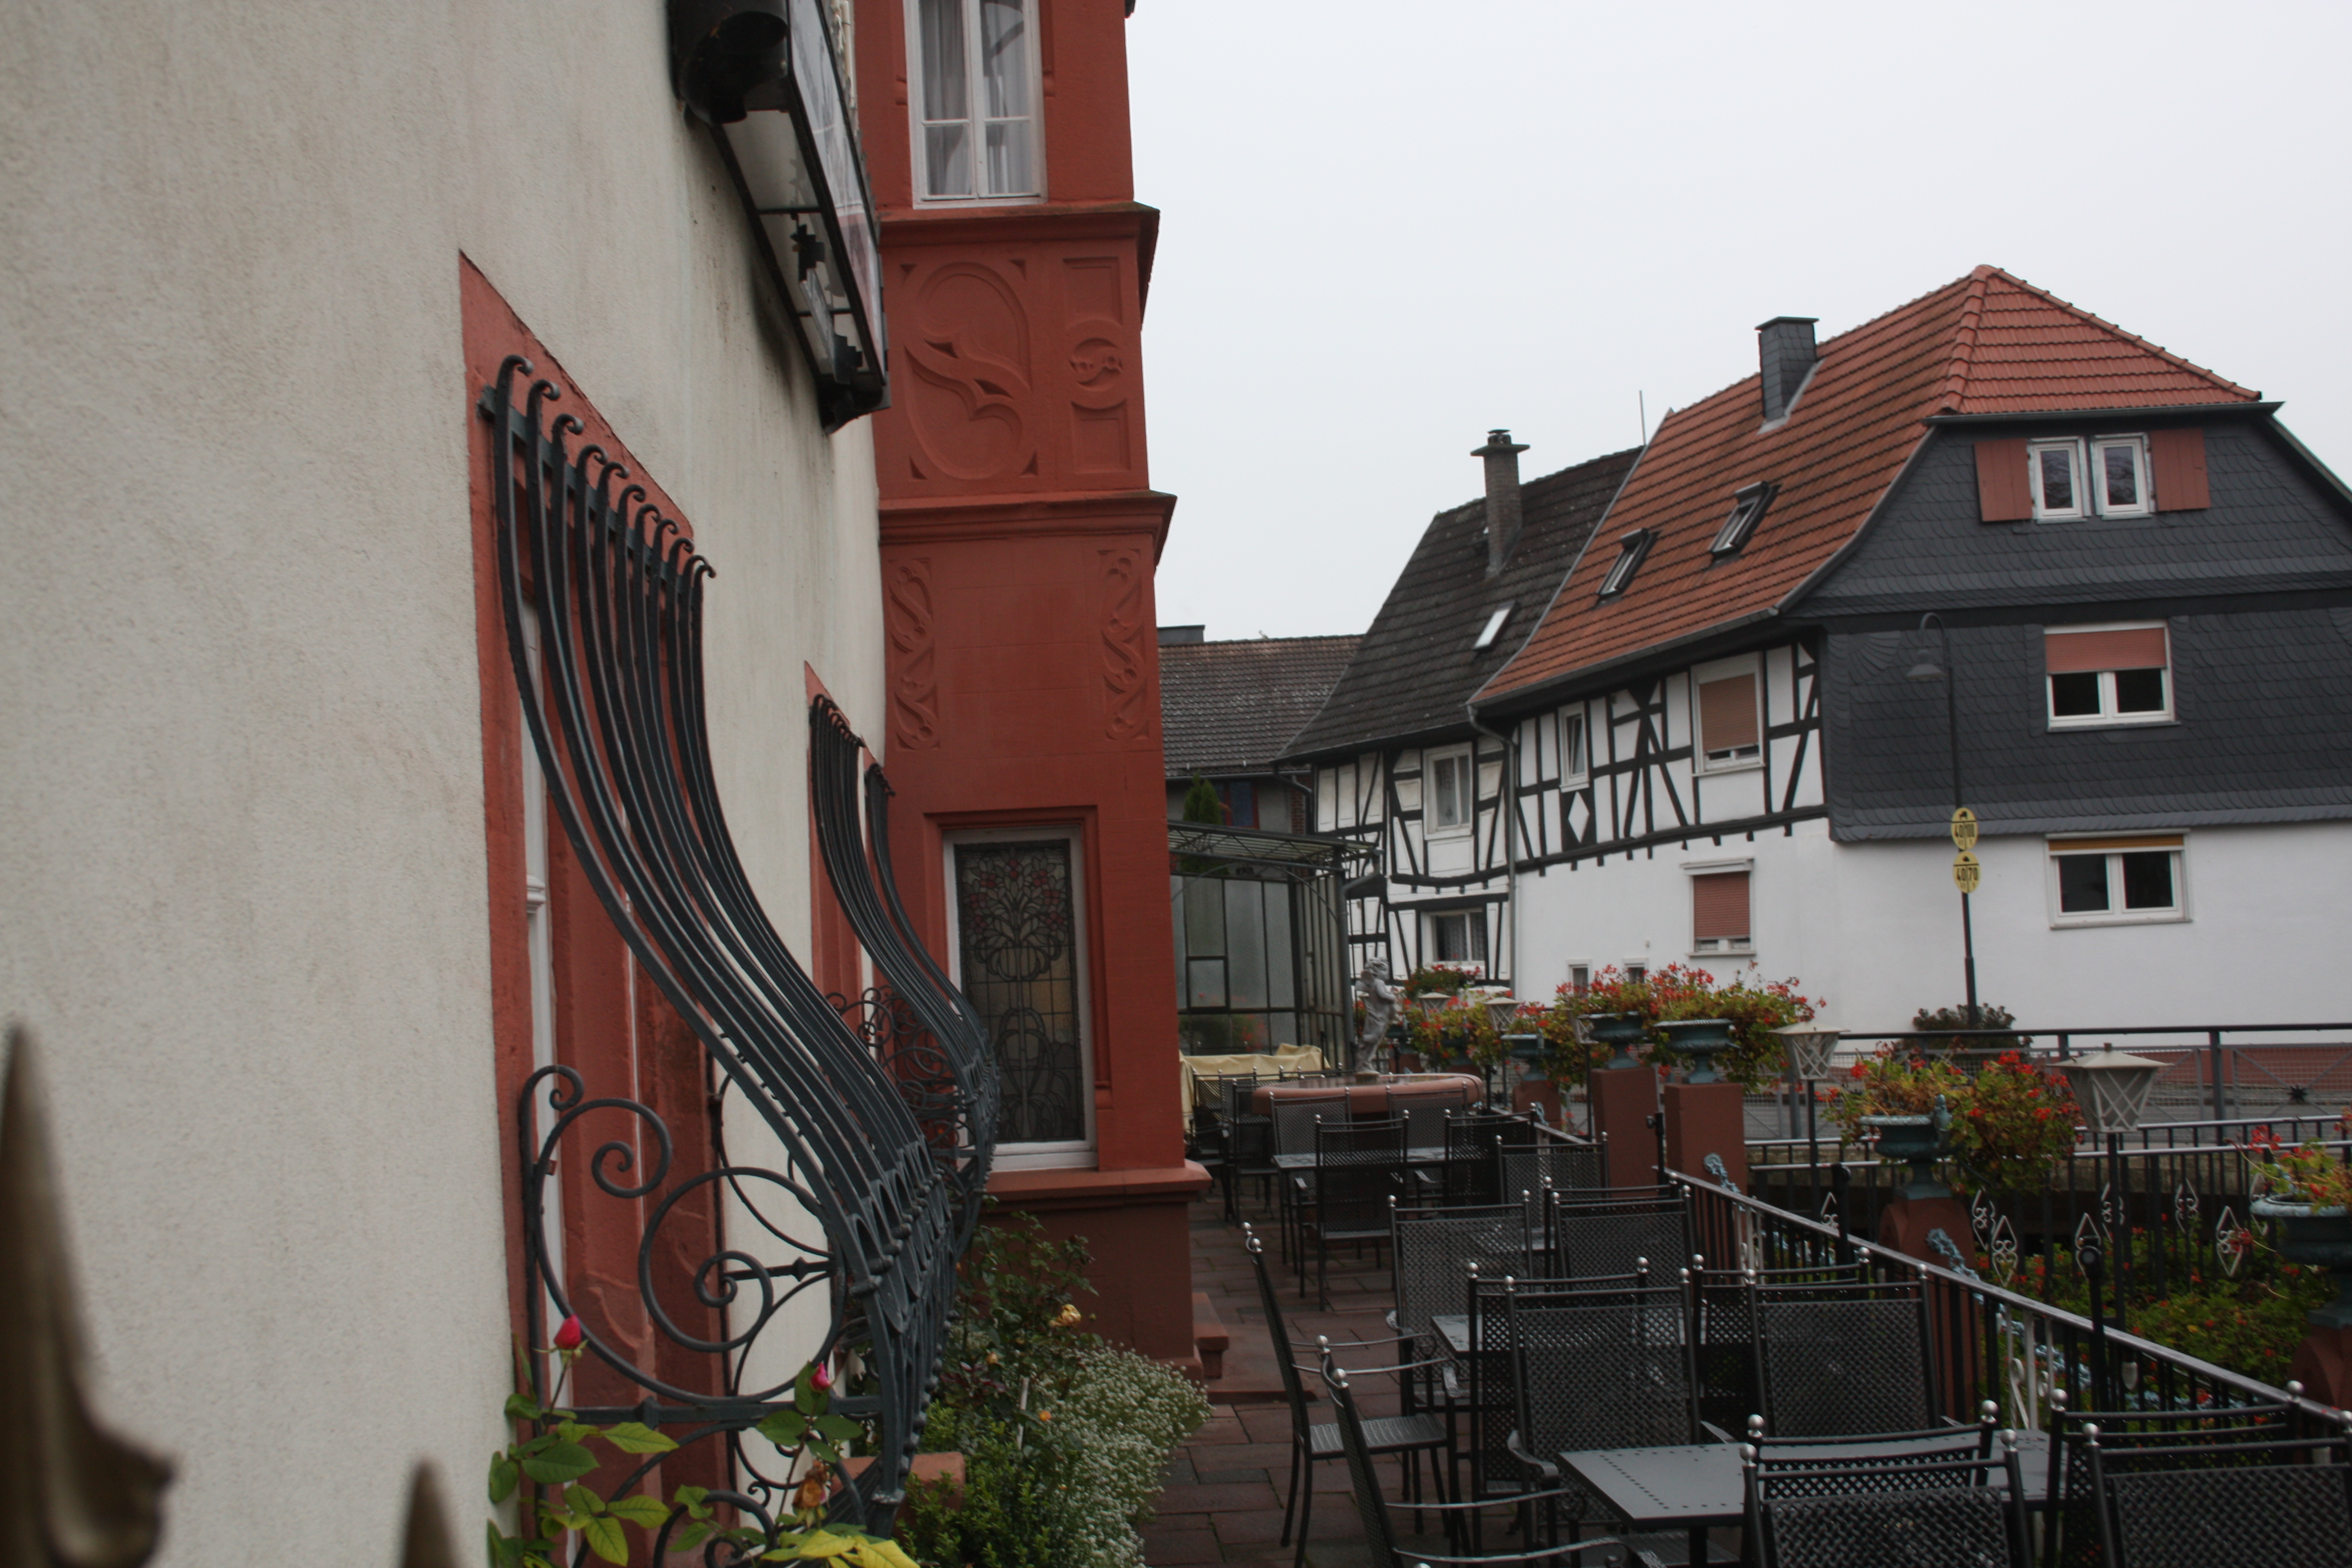 Außenansicht mit Terrasse vom Hotel Restaurant Schloss Ysenburg in Florstadt, Ortsteil Staden.
